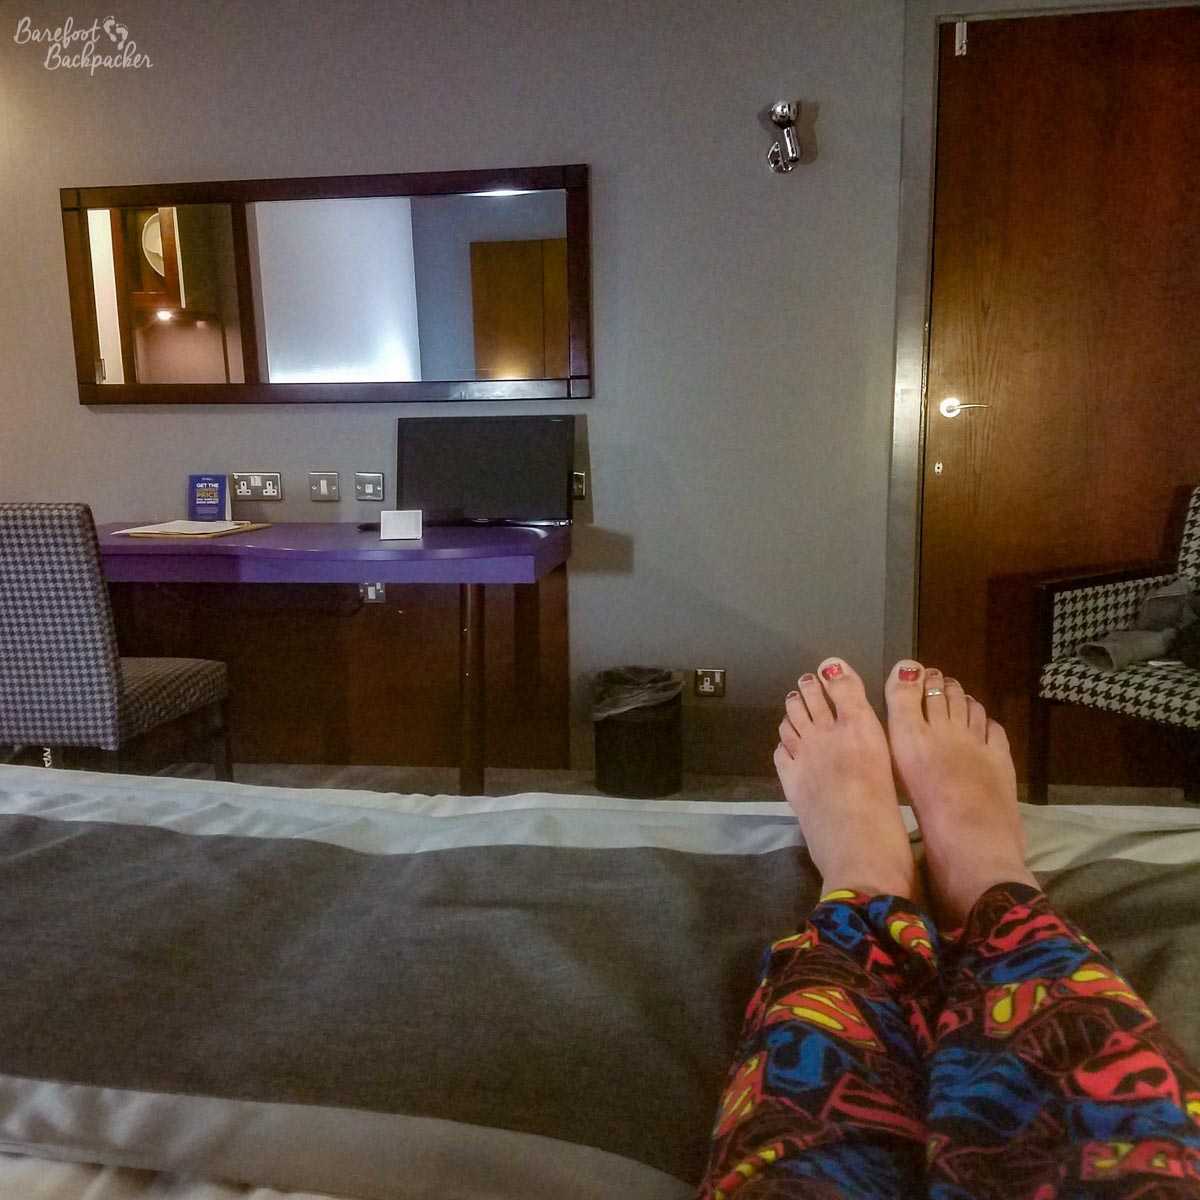 Relaxing in a hotel room in Sheffield